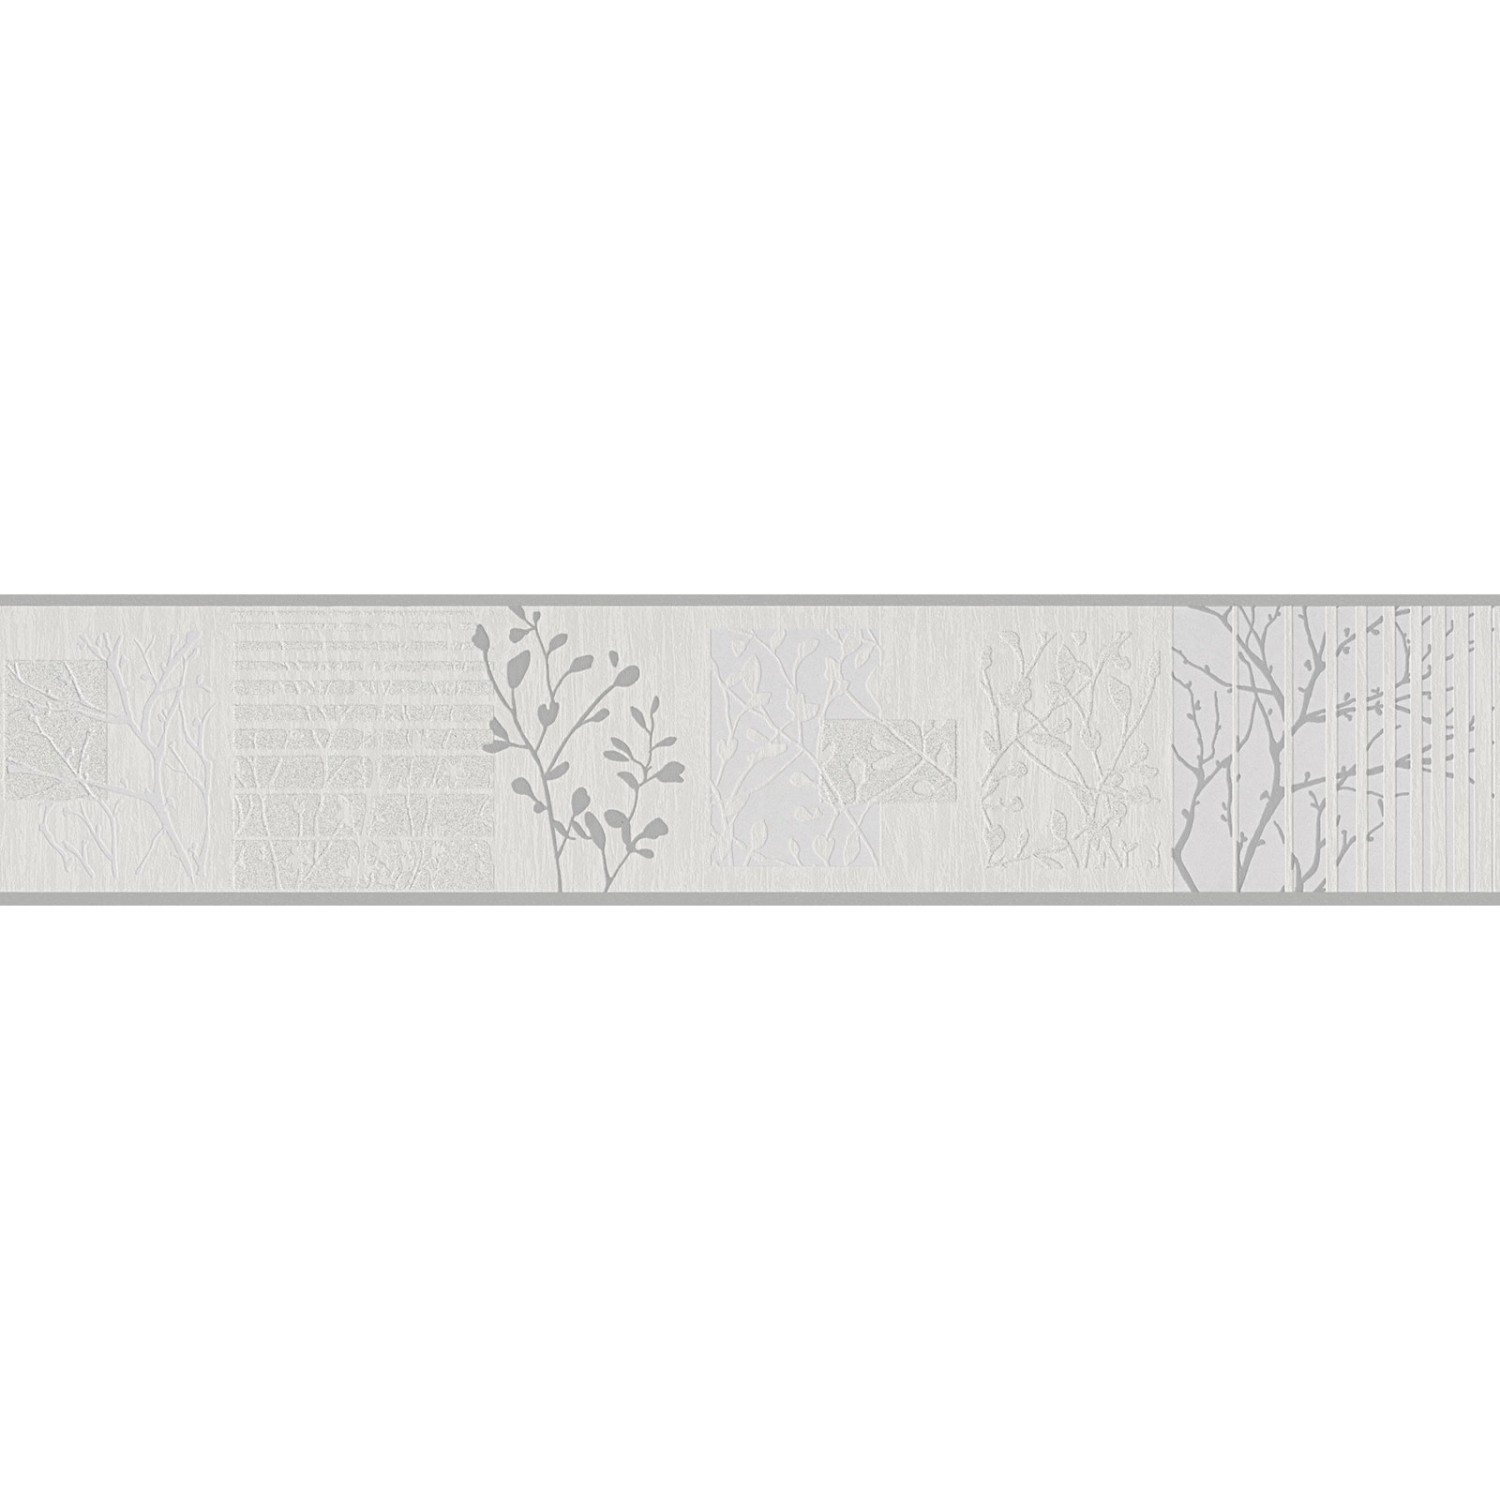 Bricoflor Hellgraue Tapeten Bordüre mit Baum Muster Moderne Tapetenborte für Schlafzimmer und Flur Graue Tapetenbordüre 